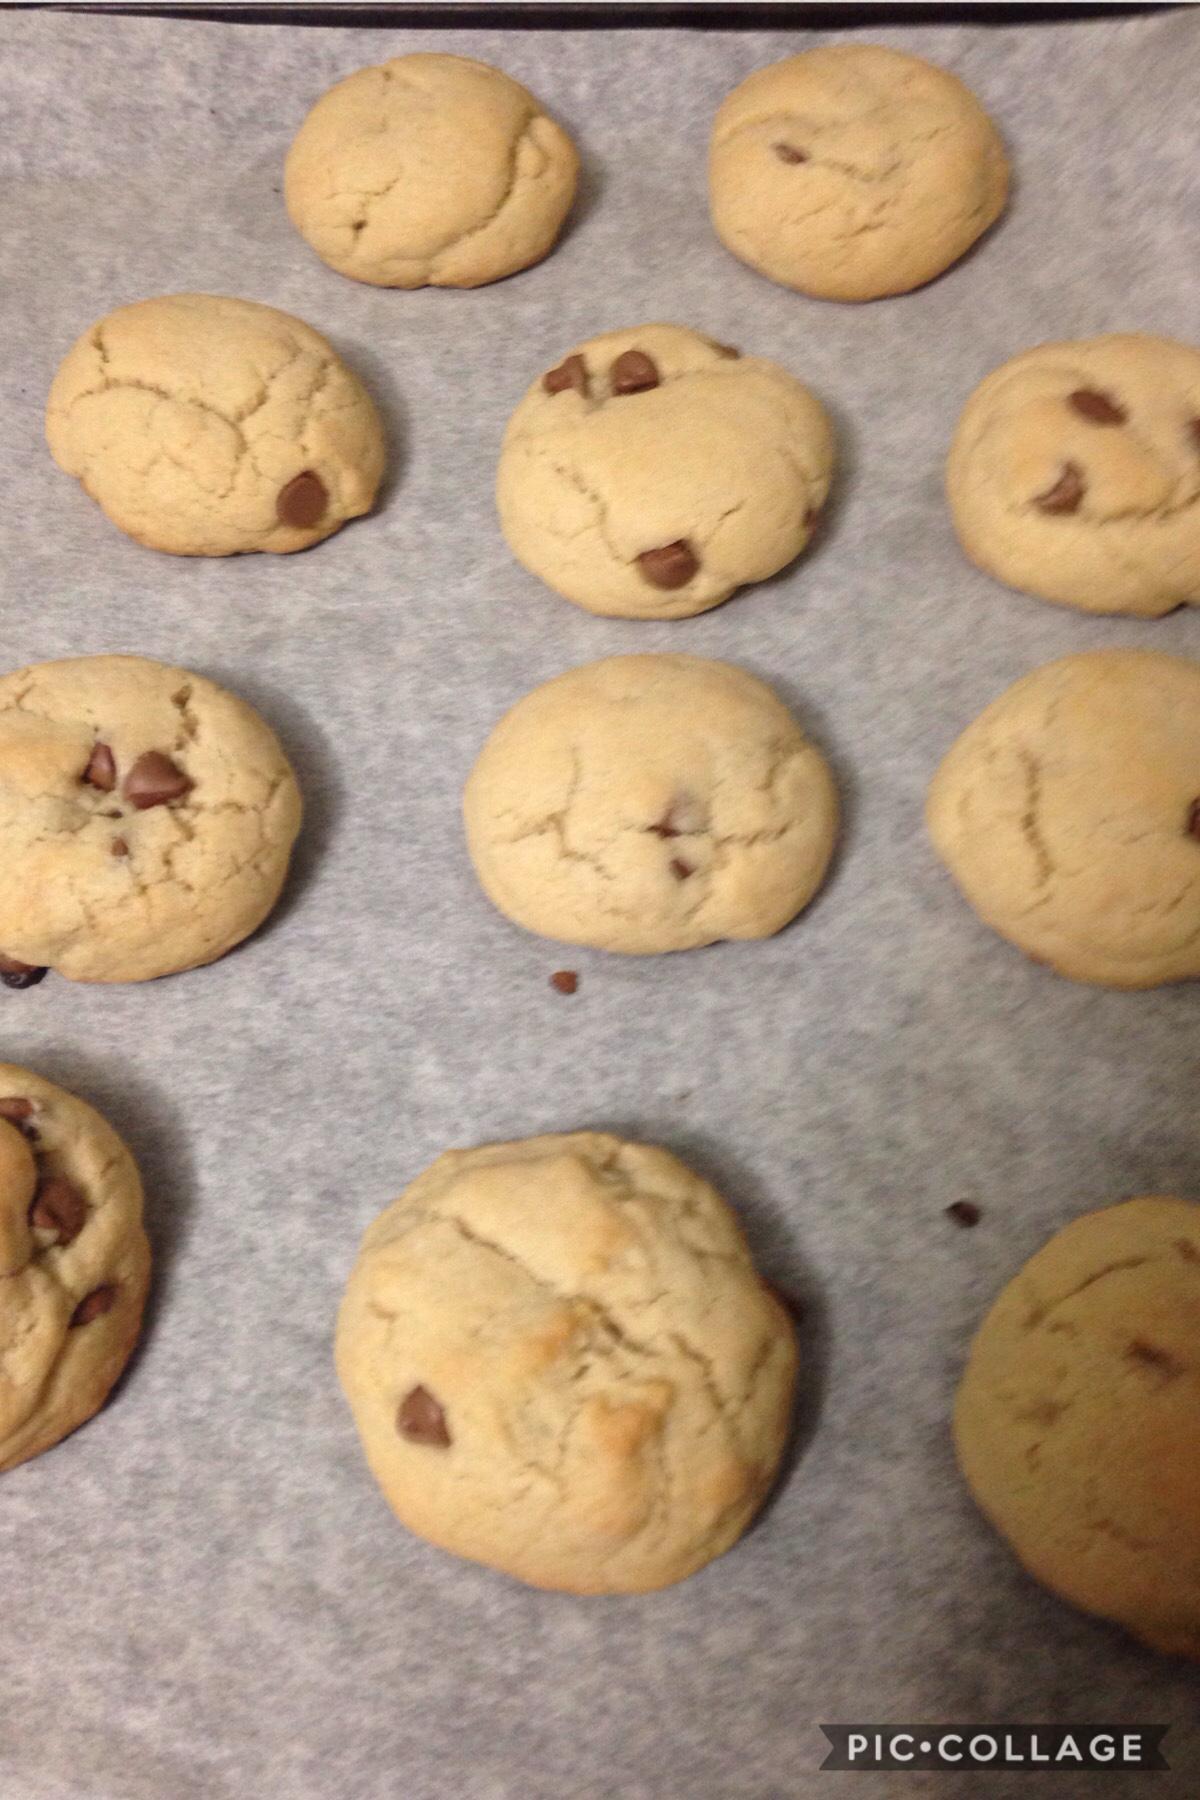 I made cookies 🍪 